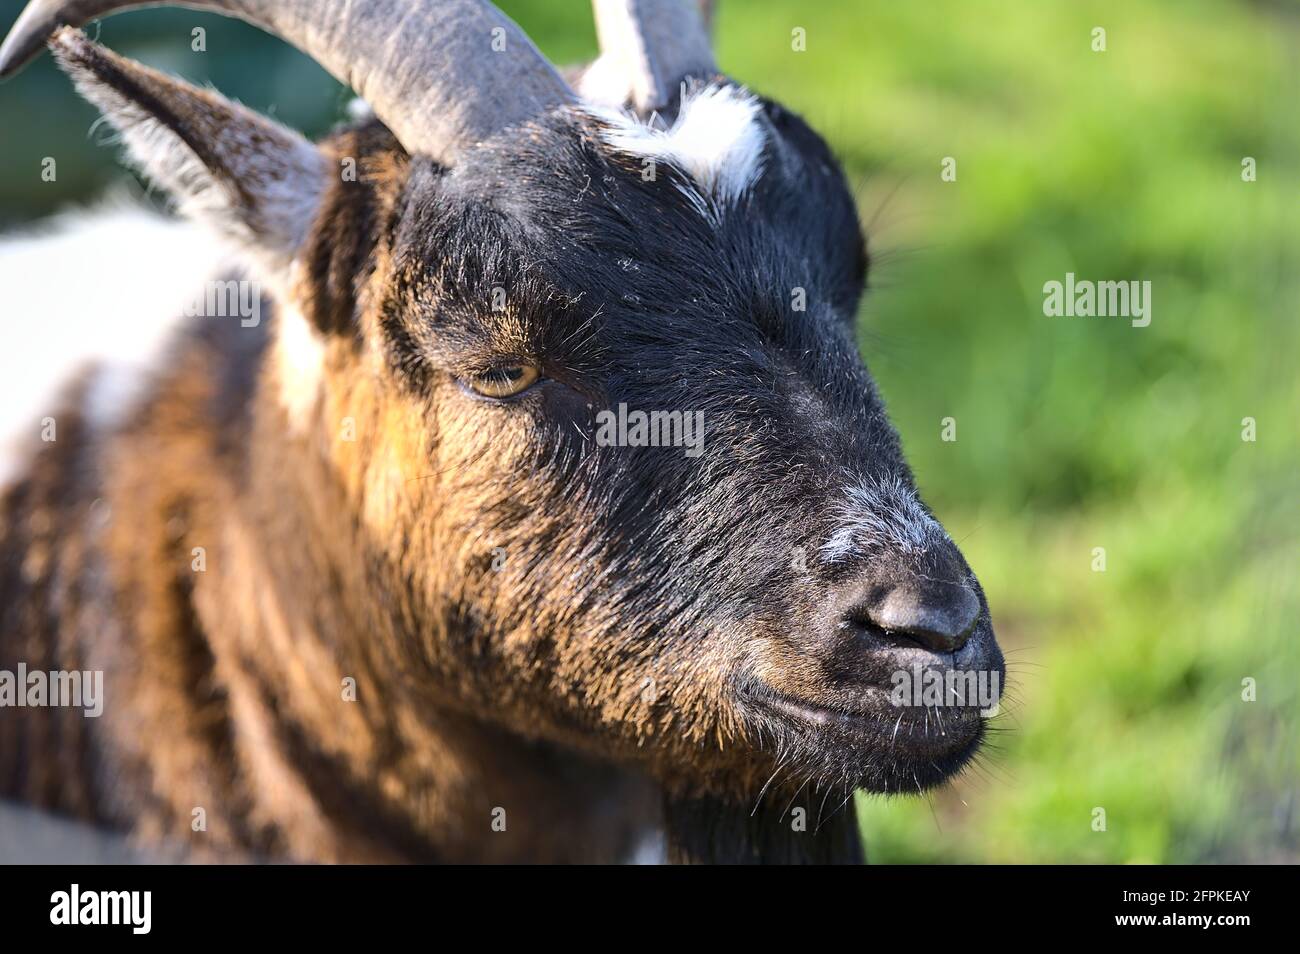 Belle vue rapprochée de la tête de chèvre mignonne à côté de la clôture en bois de la ferme de Goatstown à Dublin, en Irlande. Mise au point douce et sélective Banque D'Images